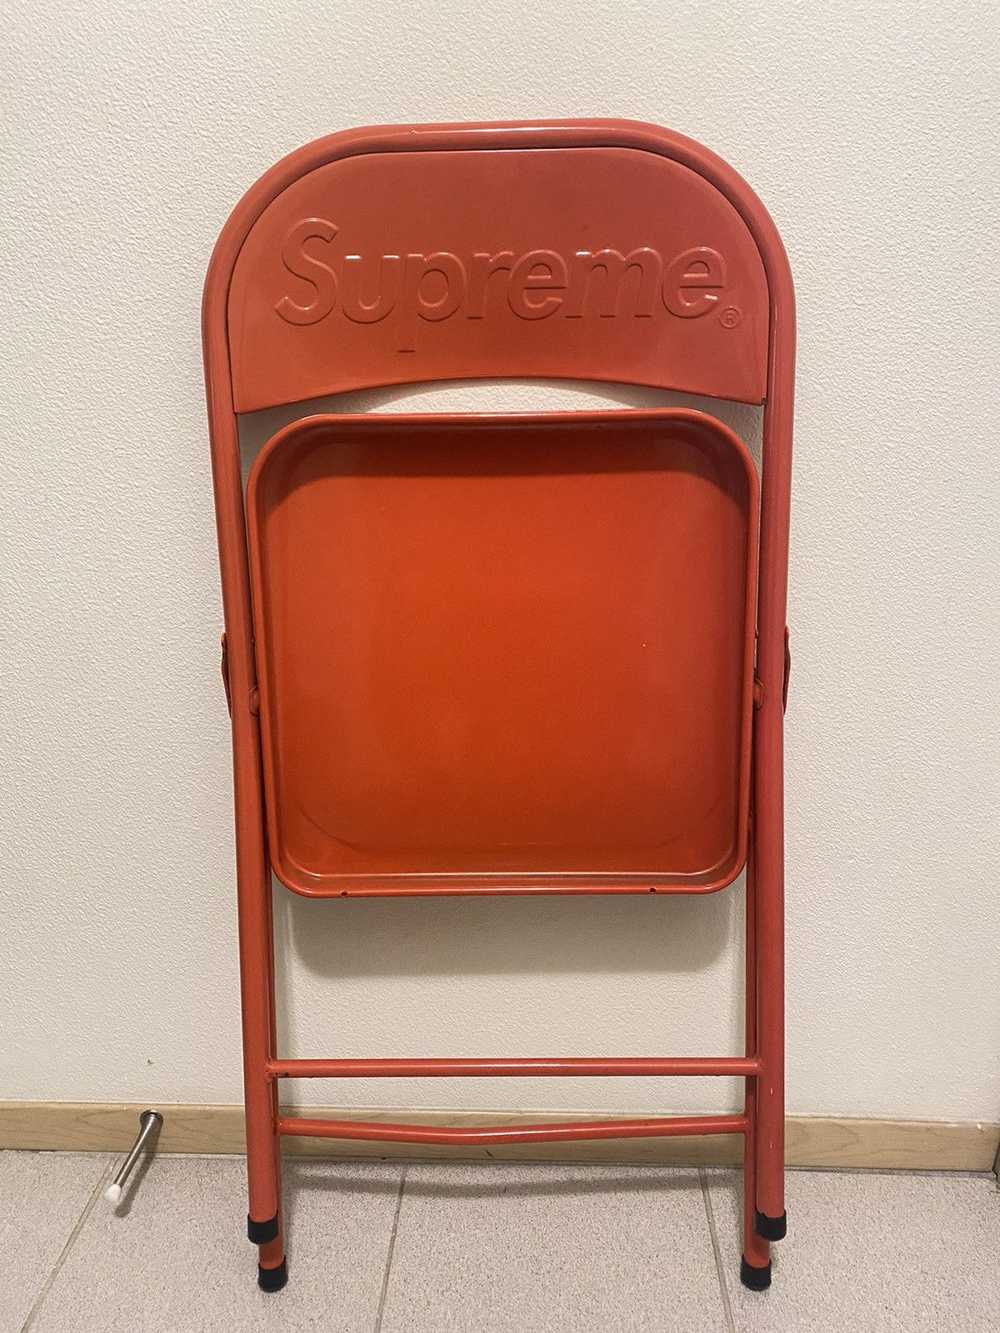 Supreme Supreme folding metal chair - image 2